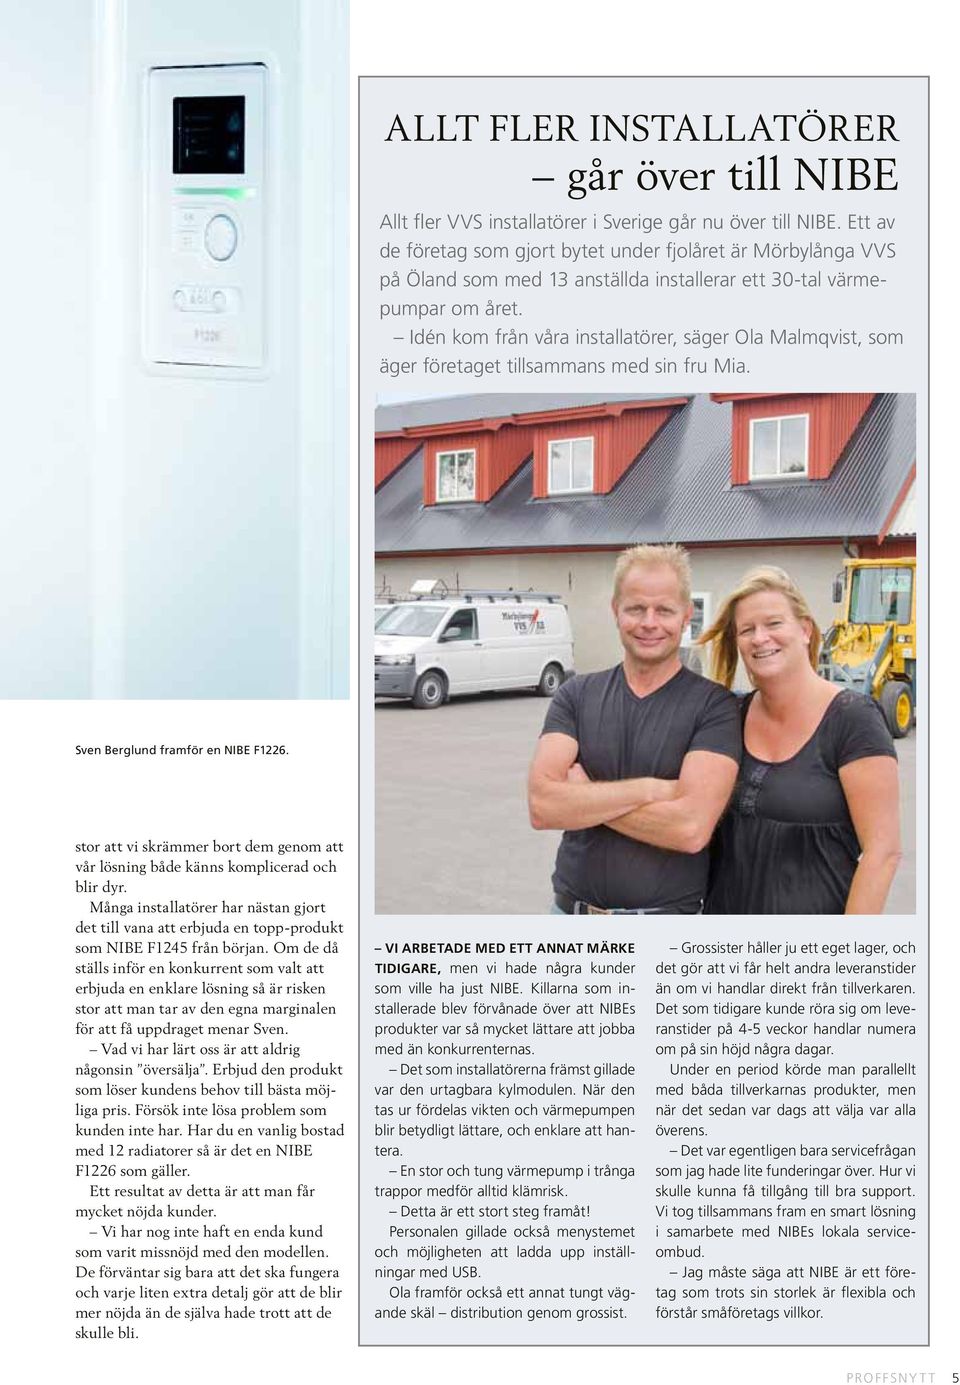 Idén kom från våra installatörer, säger Ola Malmqvist, som äger företaget tillsammans med sin fru Mia. Sven Berglund framför en NIBE F1226.